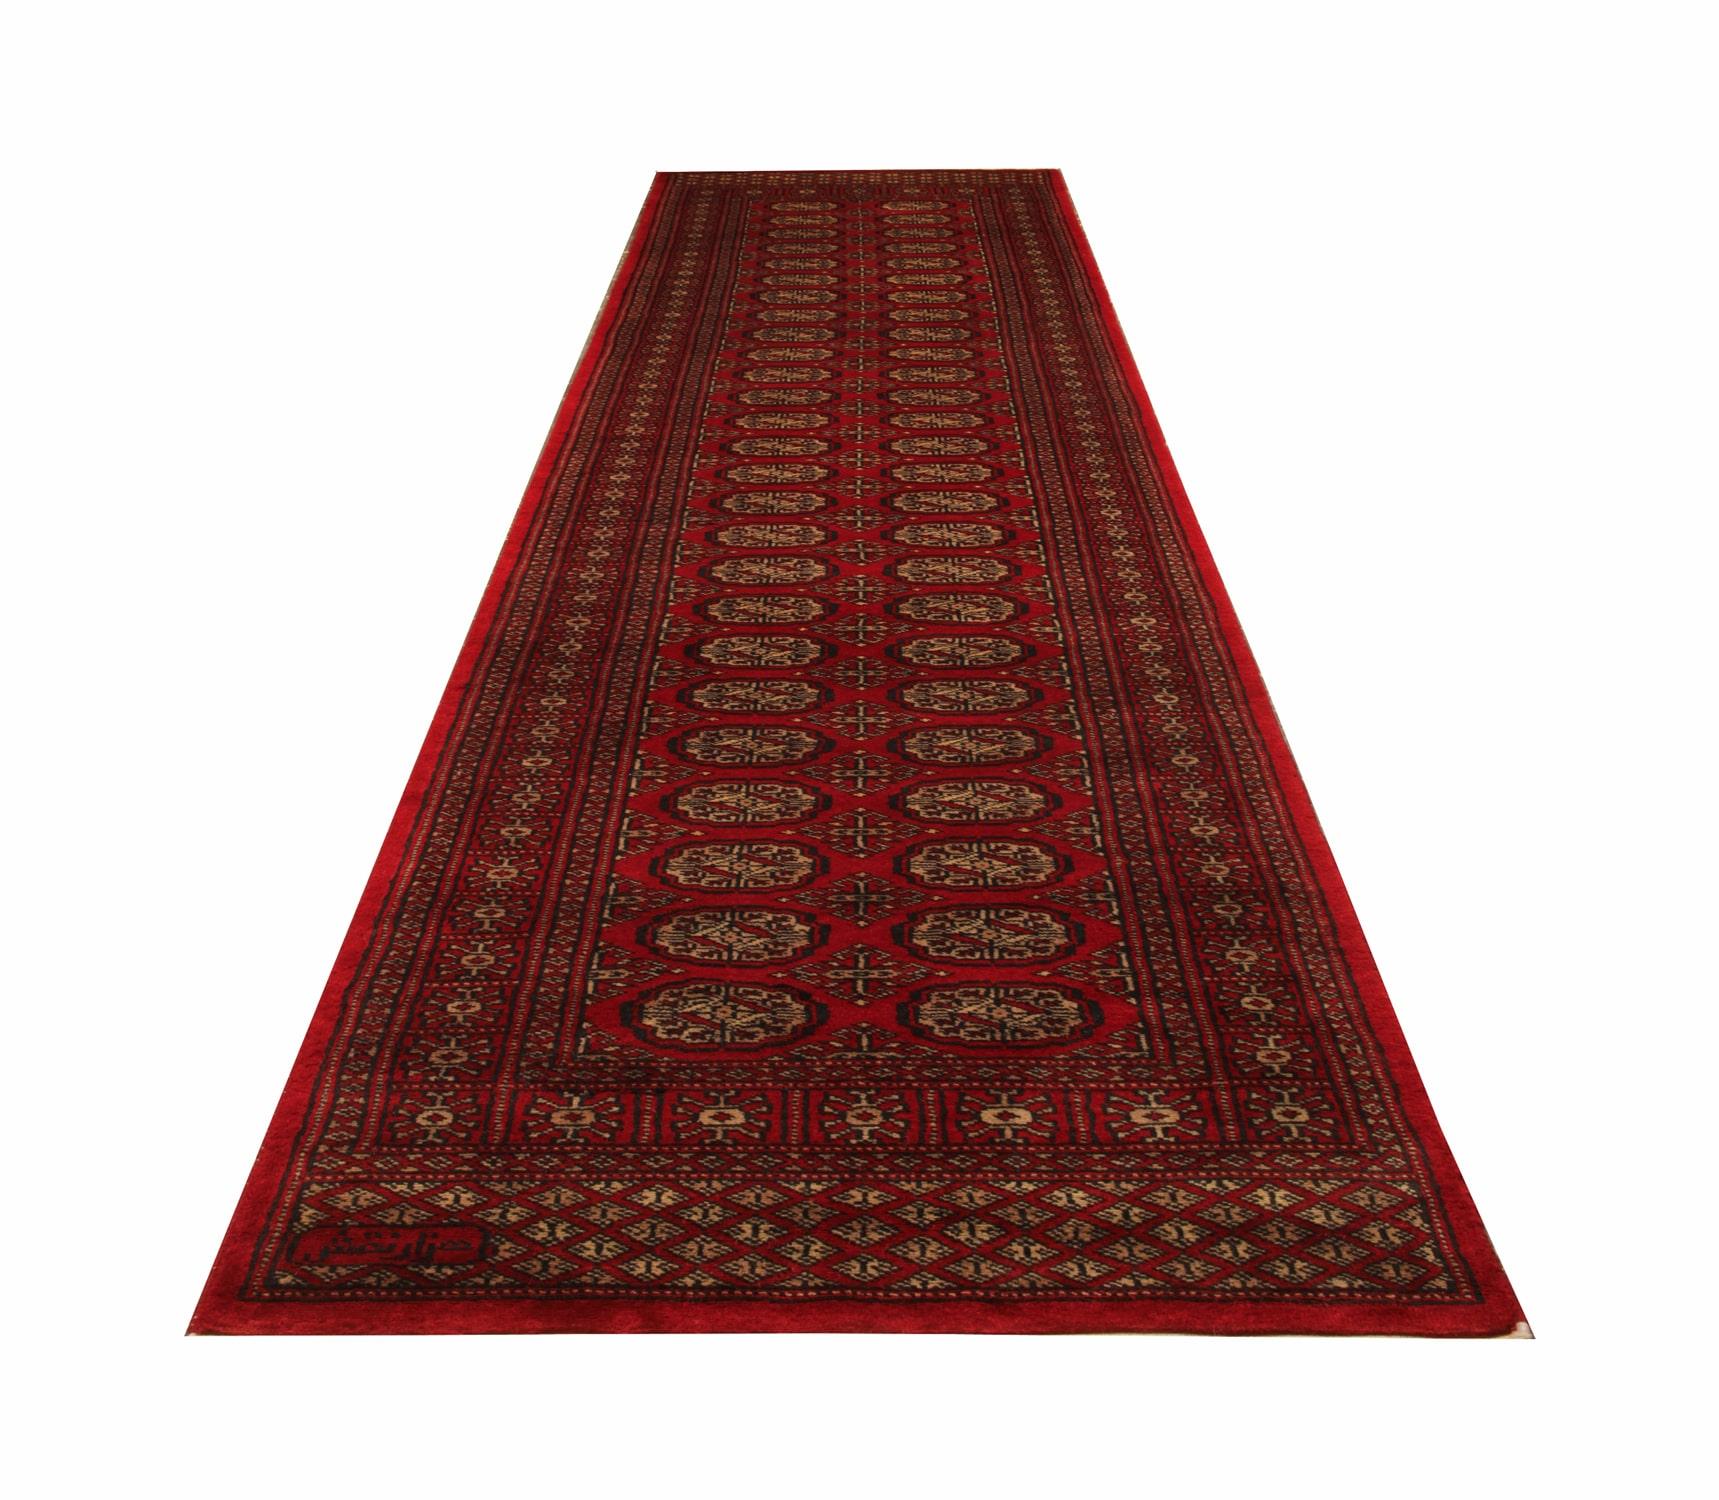 Art Deco Red Runner Rug, Several Medallion Vintage Wool Bukhara Turkmen Stair Runner For Sale